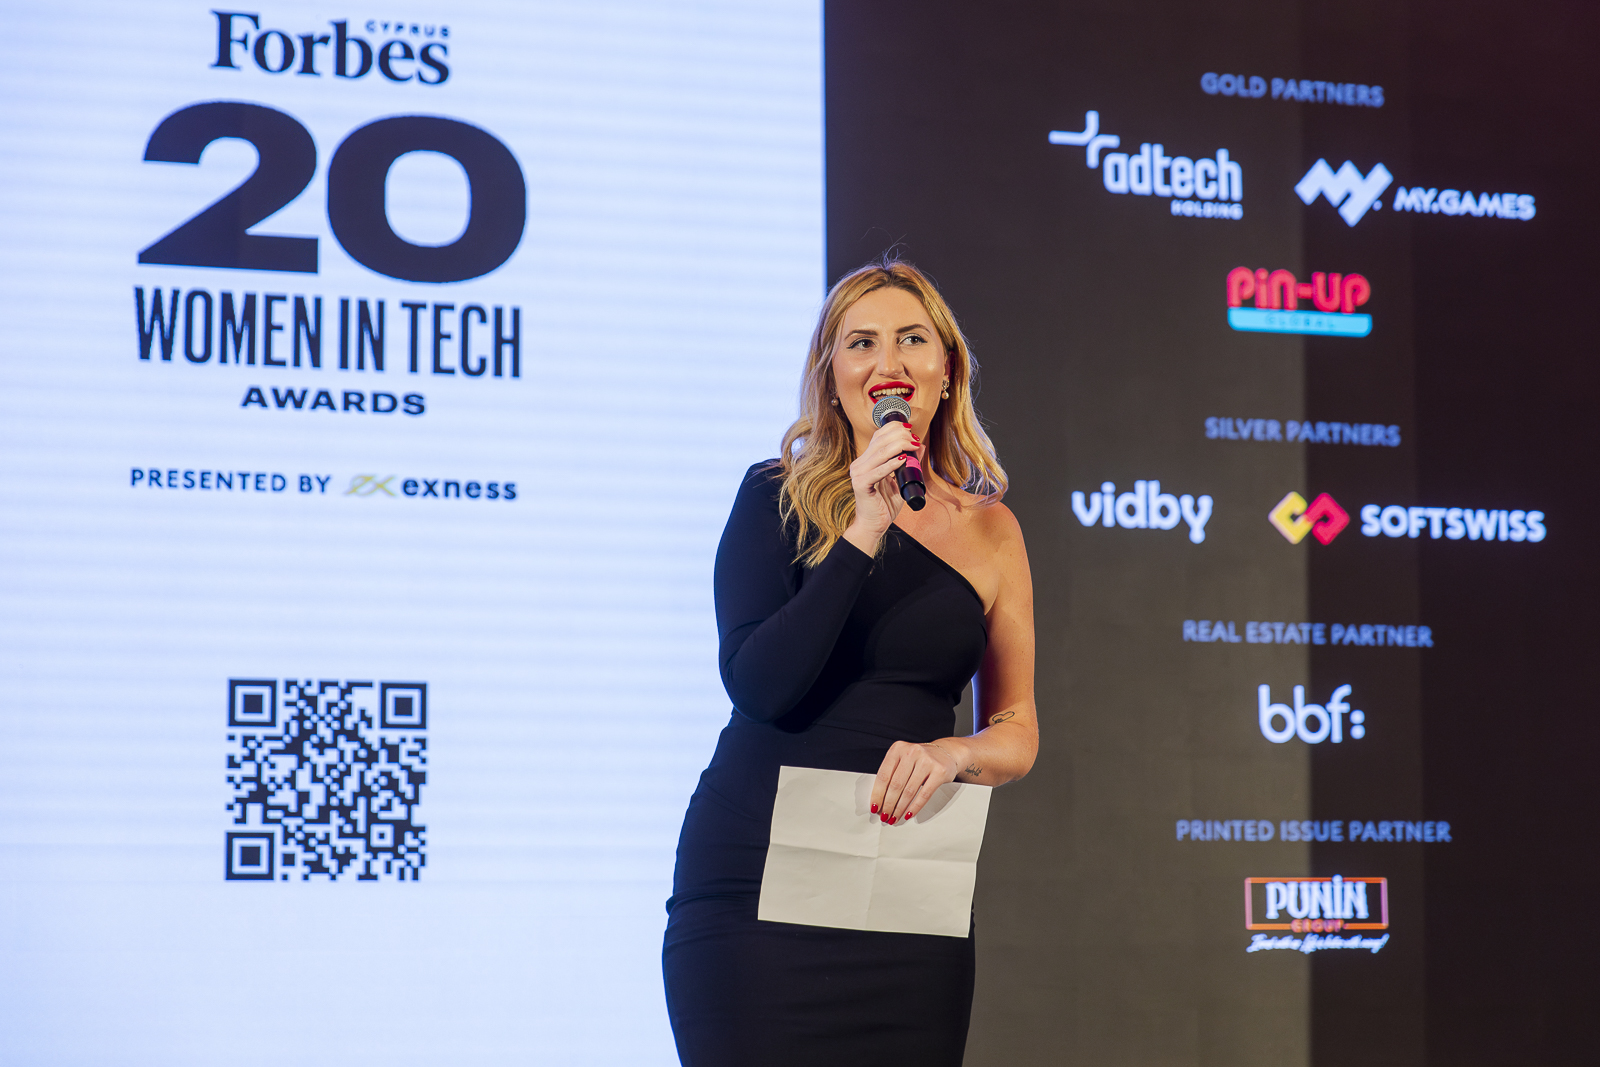 Adtech-Elena-Dolya-Forbes-women-in-tech